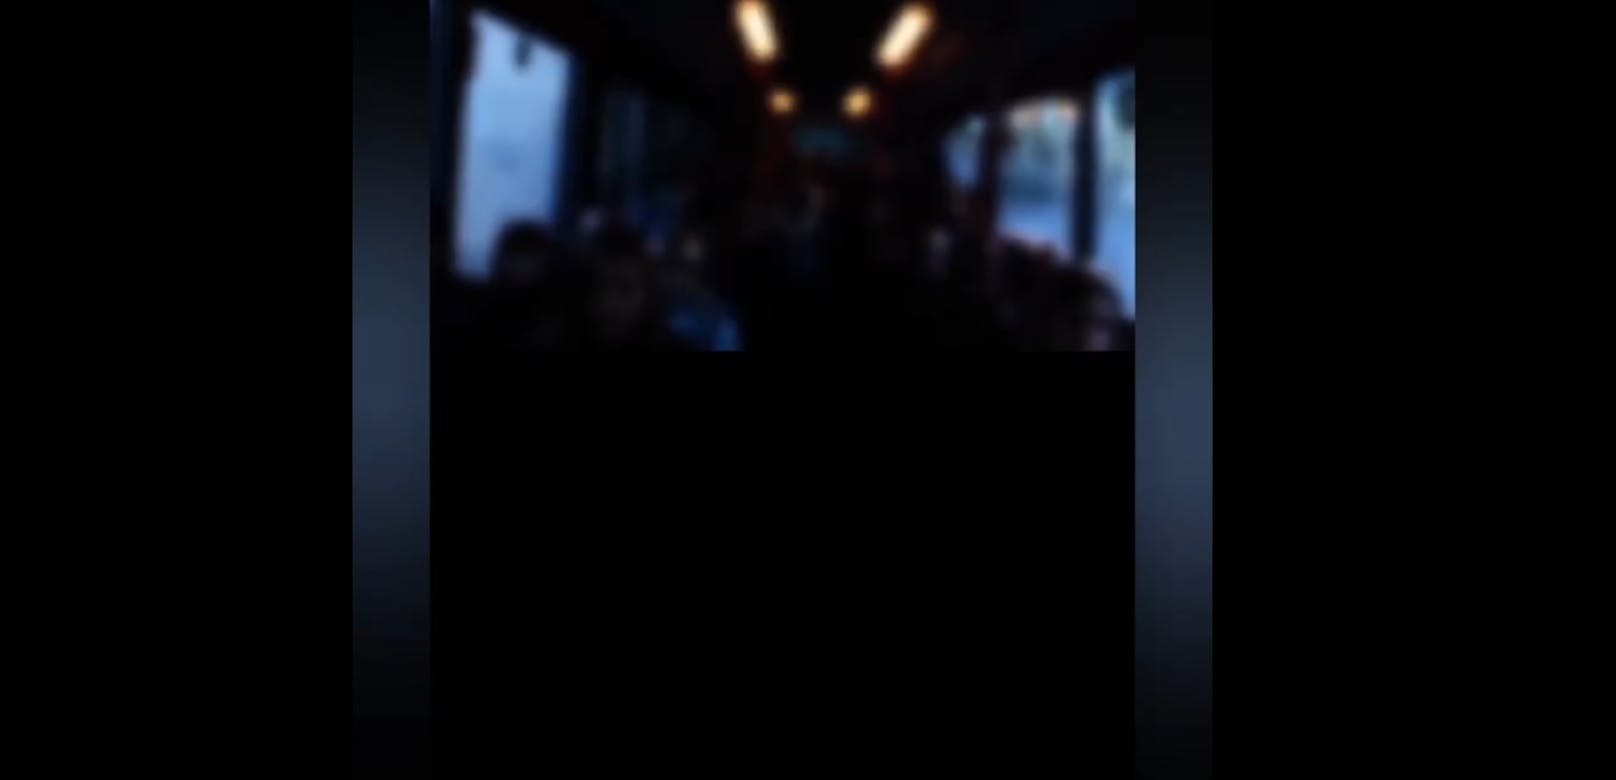 Busfahrer schreckt Kinder: "Maske ab, sonst sterbt ihr"